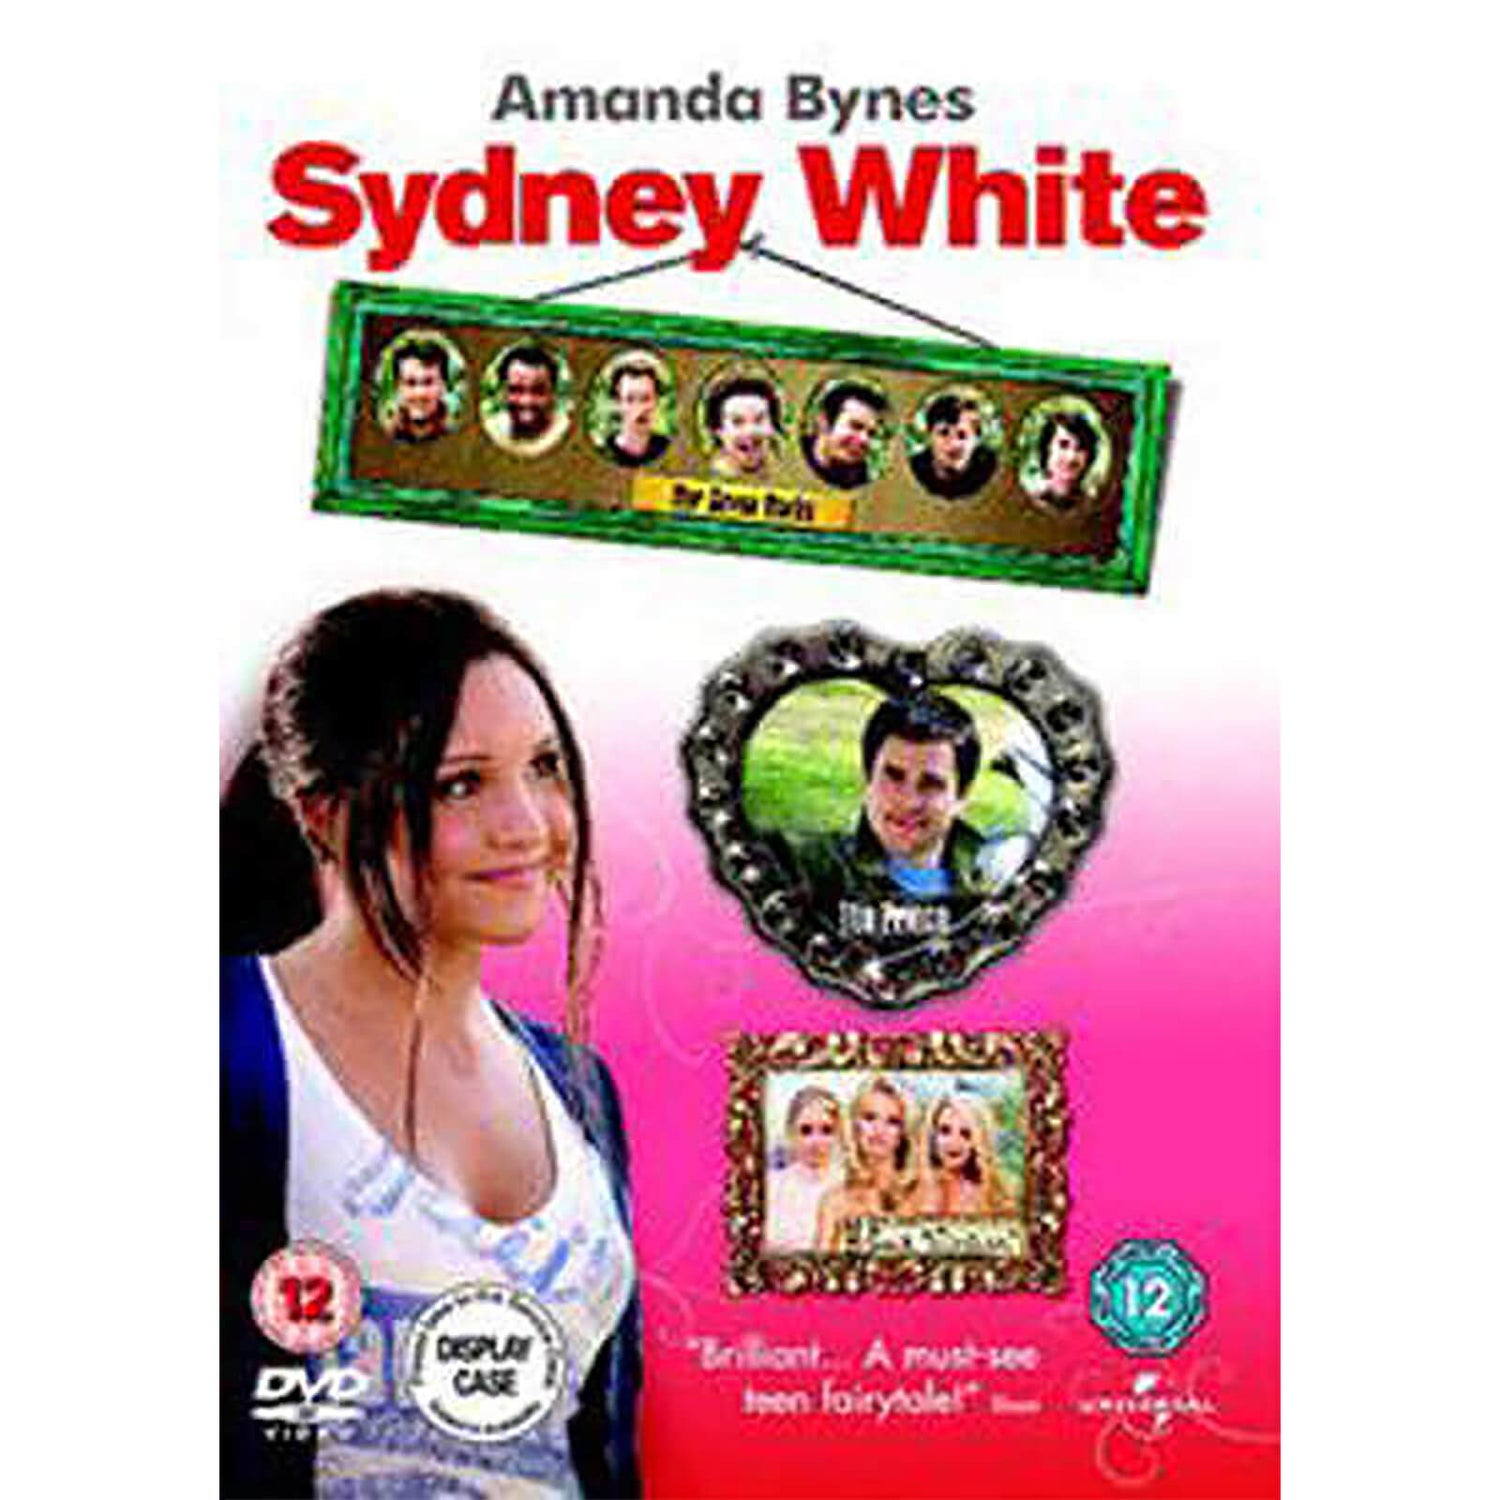 Sydney White and Seven Dorks